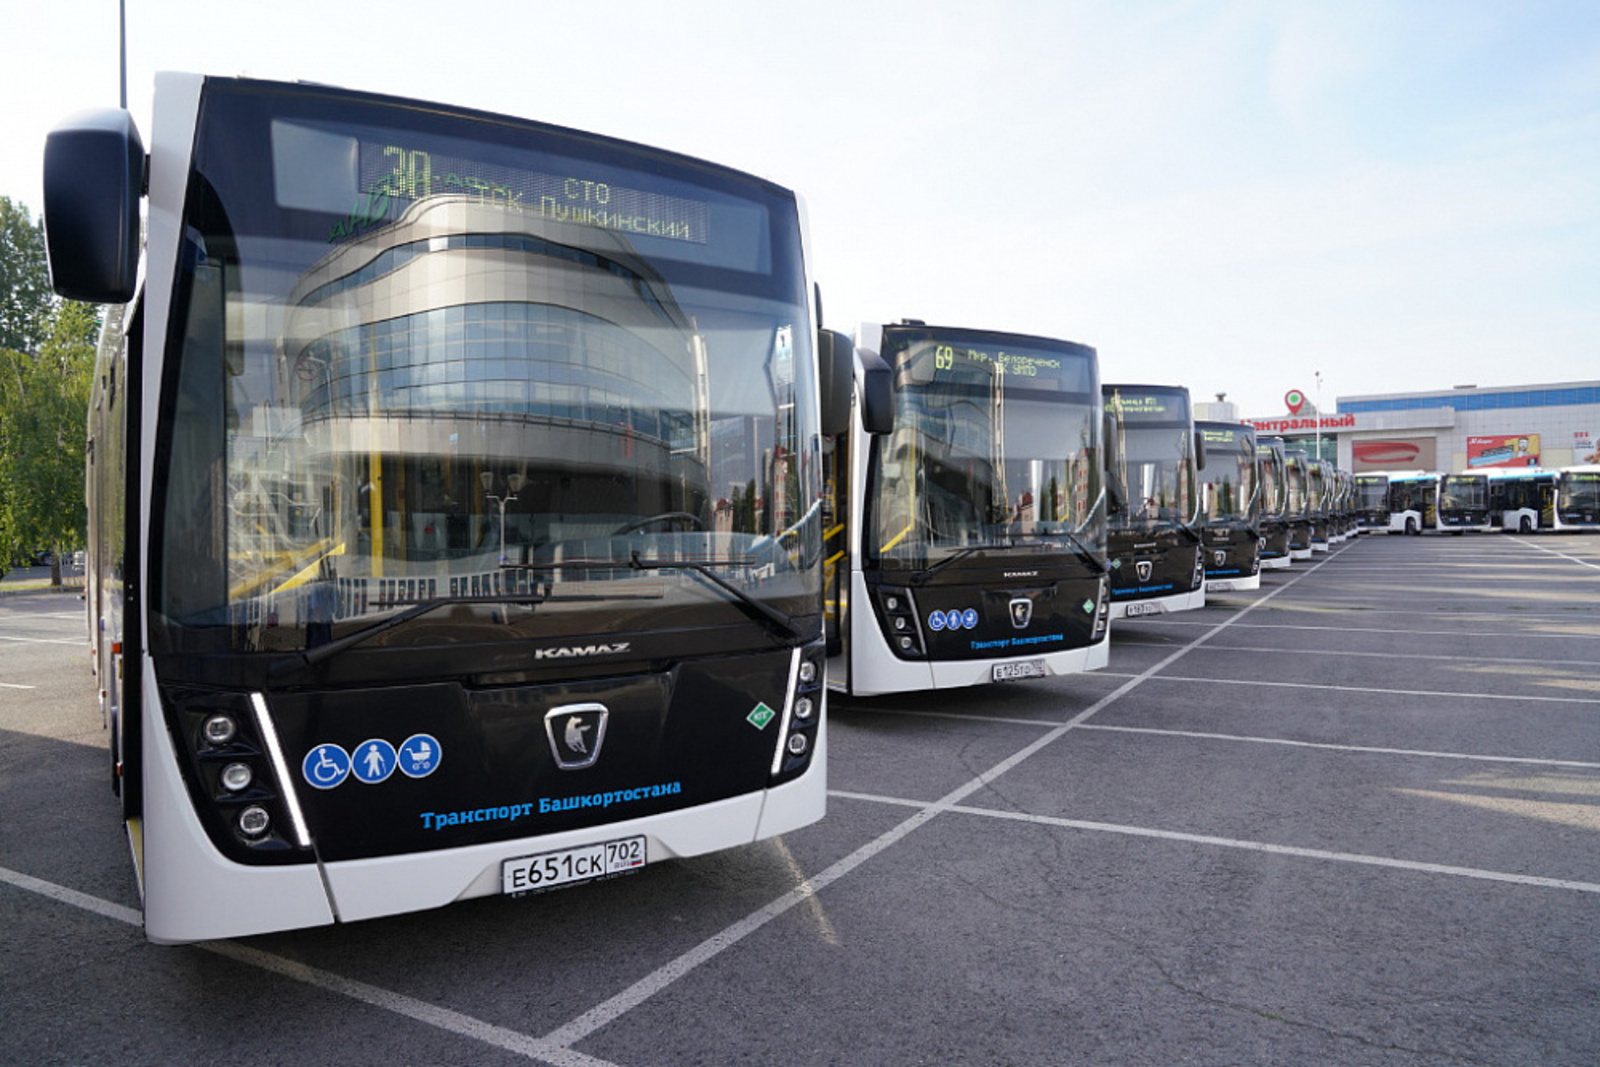 «Башавтотранс» получил новые автобусы большого класса «Башавтотранс» получил новые автобусы большого класса «Башавтотранс» получил новые автобусы большого класса